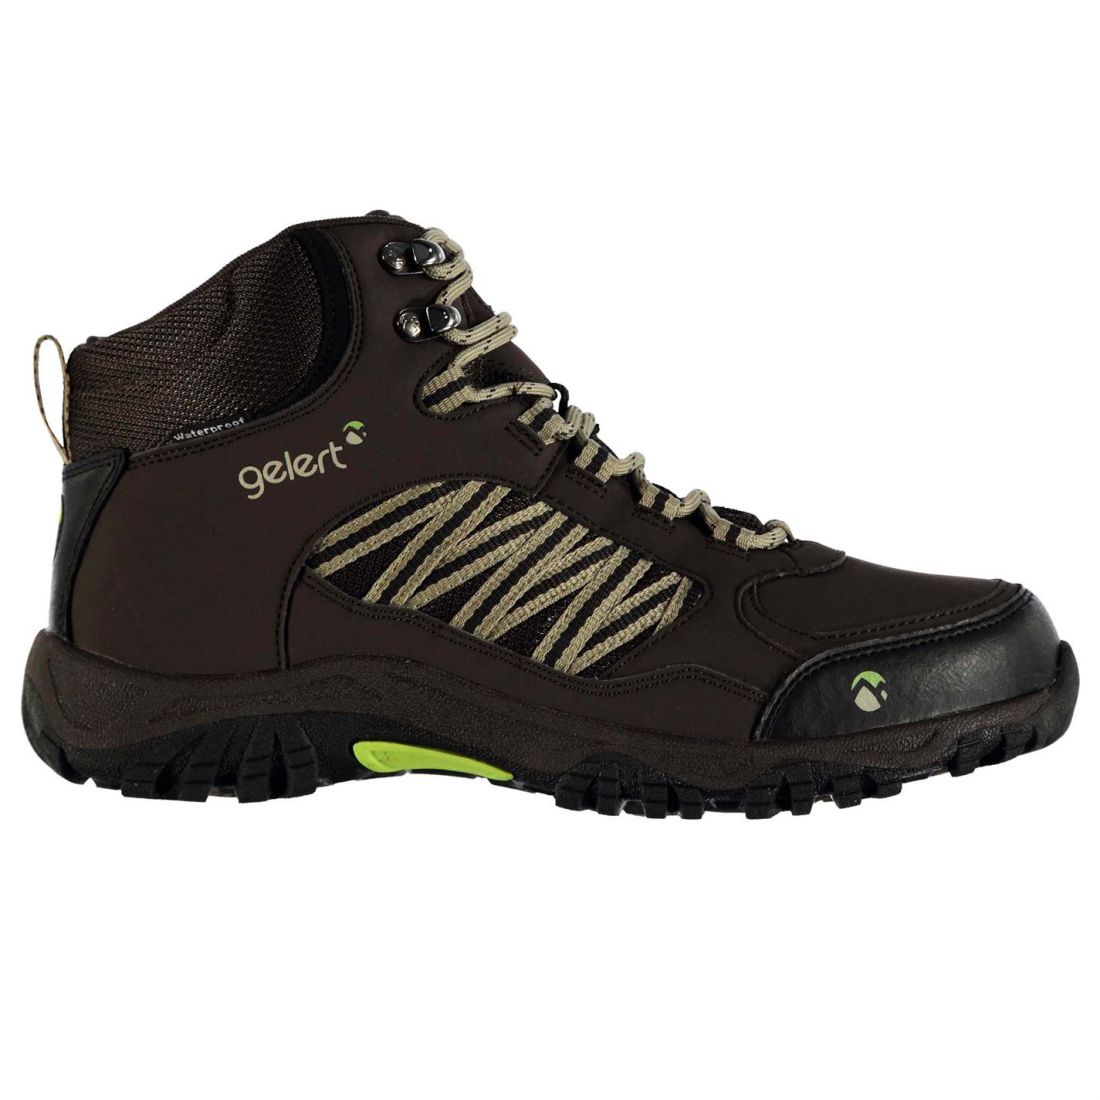 Gelert Mens Horizon Waterproof Mid Walking Boots Lace Up Shoes Outdoor ...